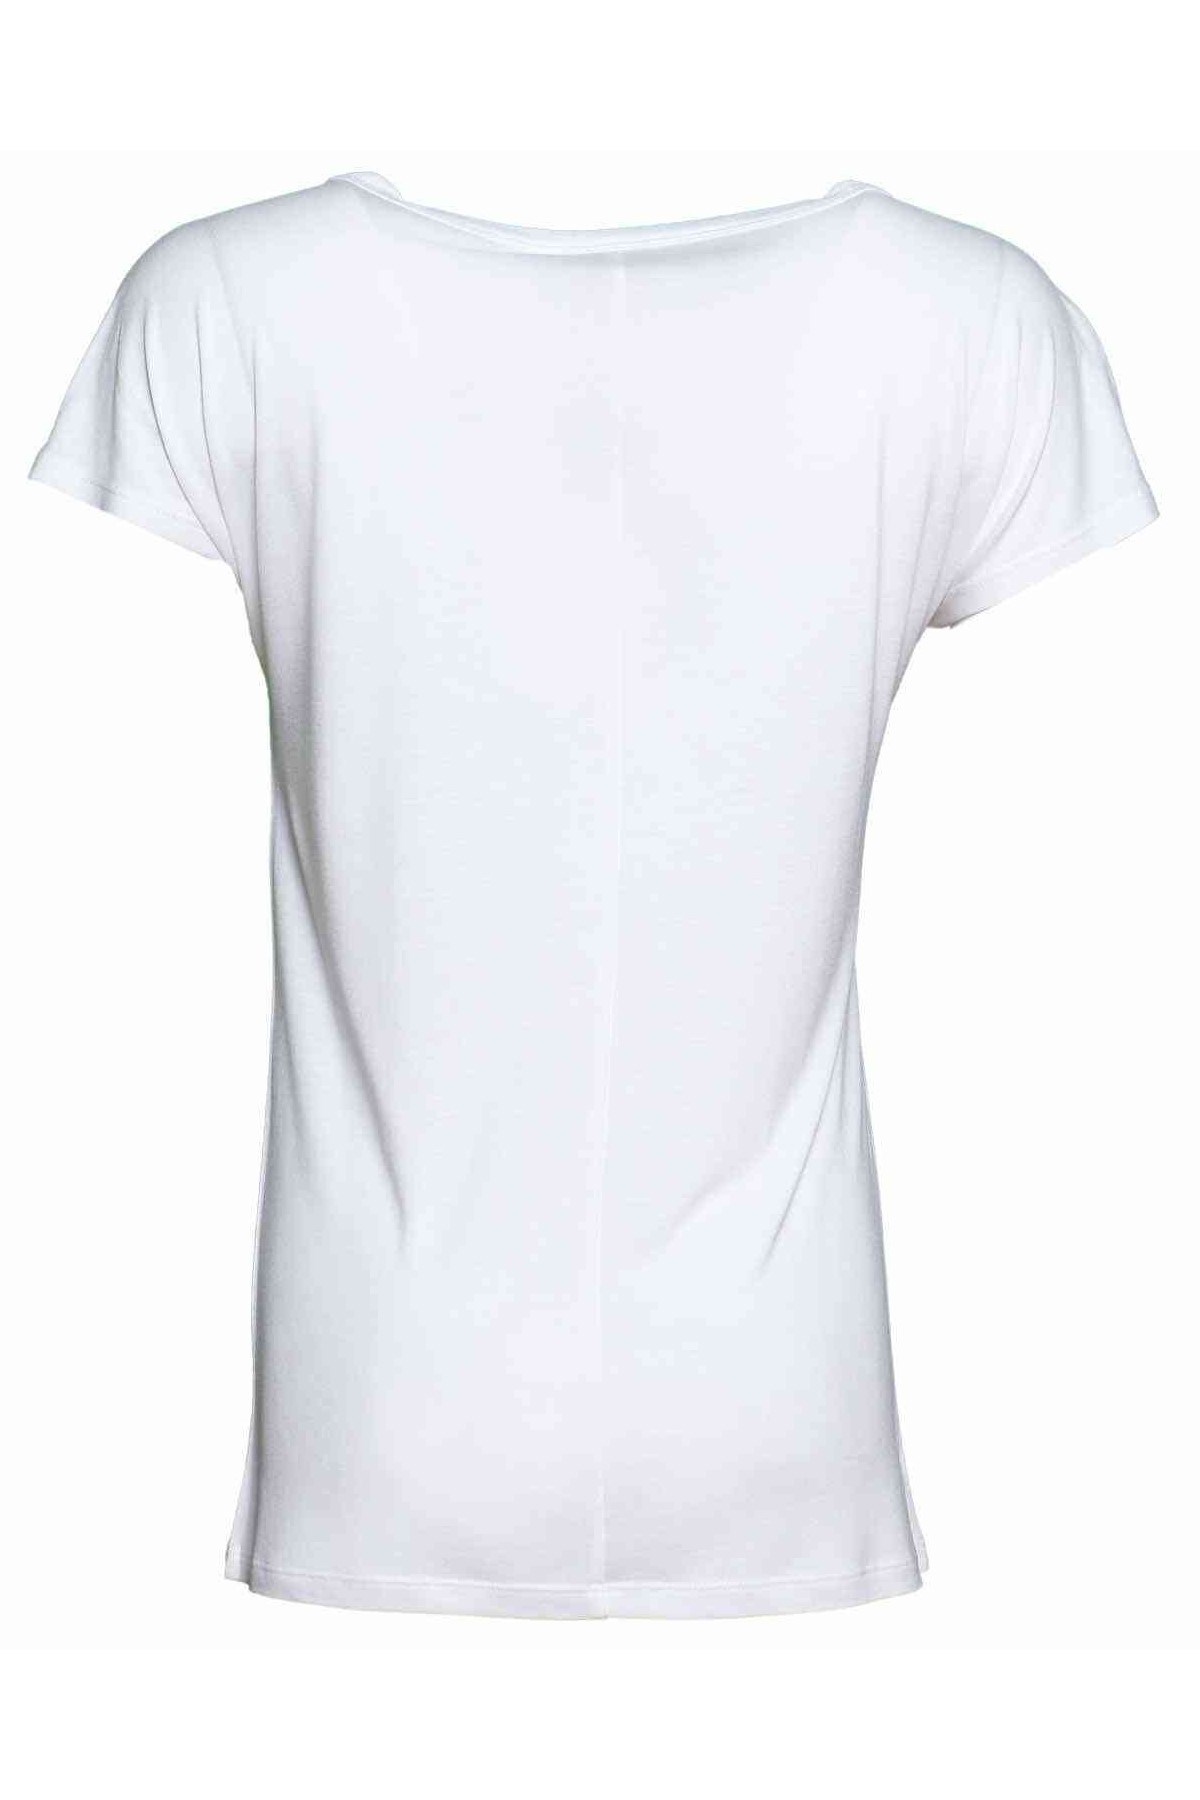 Hummel Kadın T-Shirt 911318-9003 Off Whıte